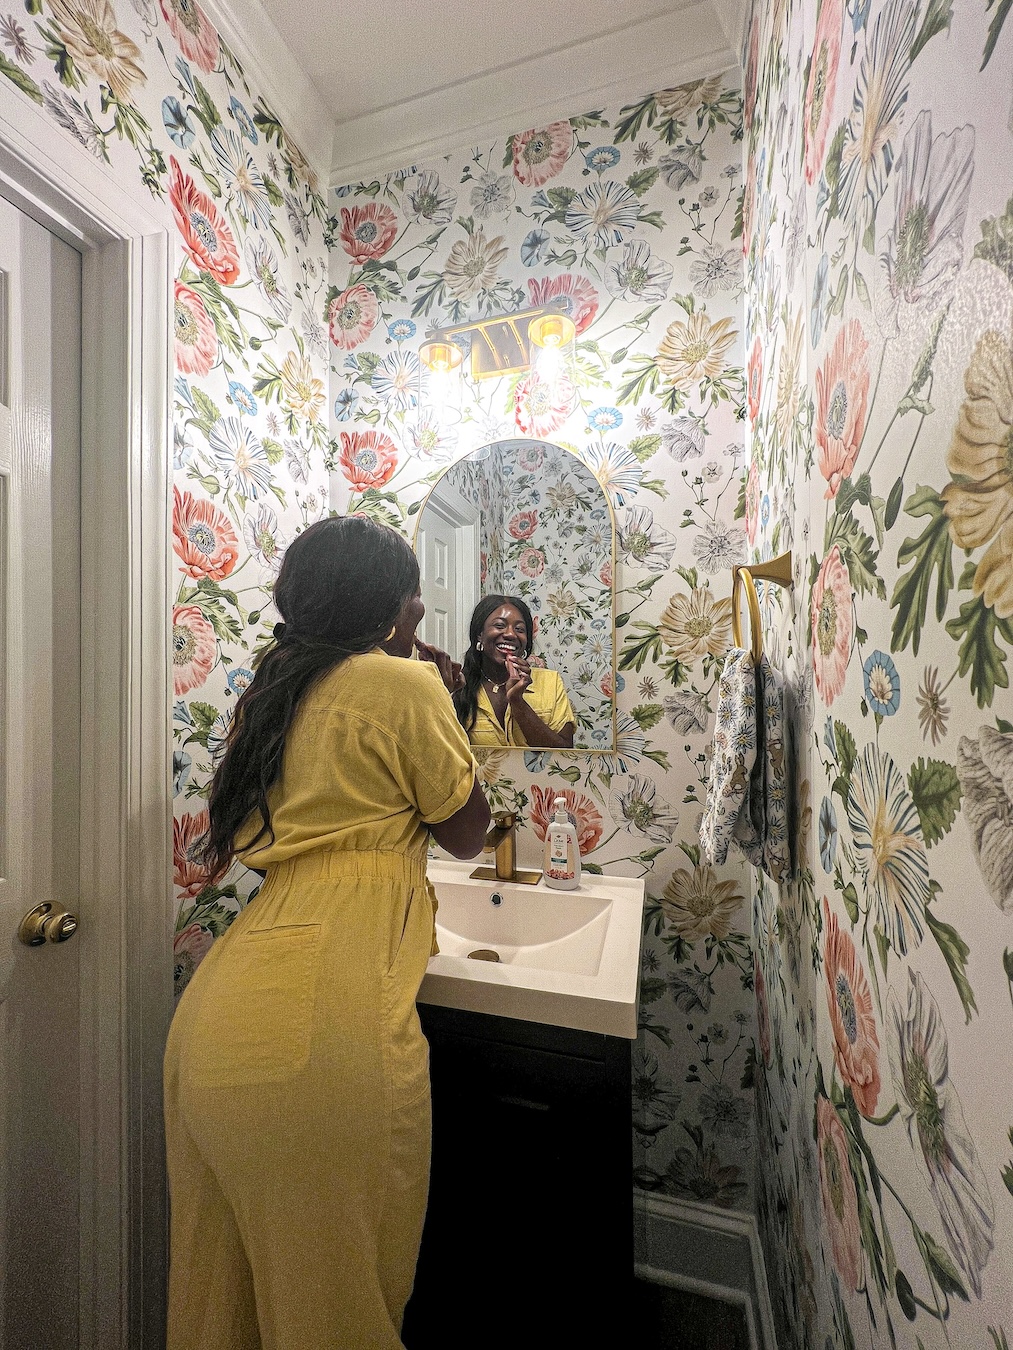 charlotte influencer tomi obebe shares her half bathroom transformation for under $500